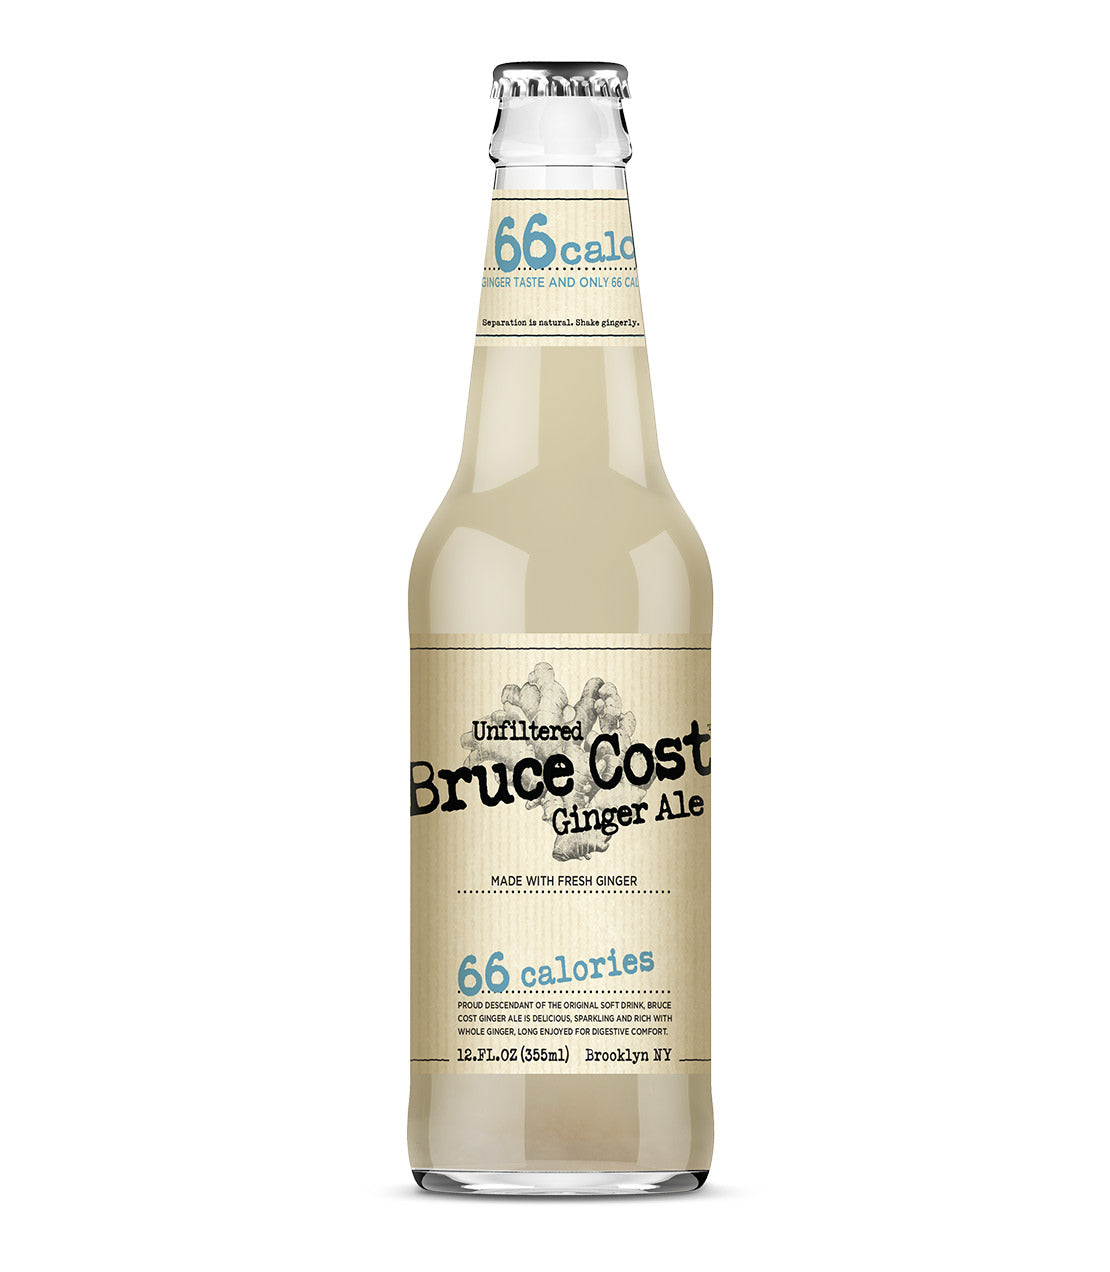 Bruce Cost Ginger Ale 66 - 12 oz. Bottle Case of 12 Bottles - Harney & Sons Fine Teas